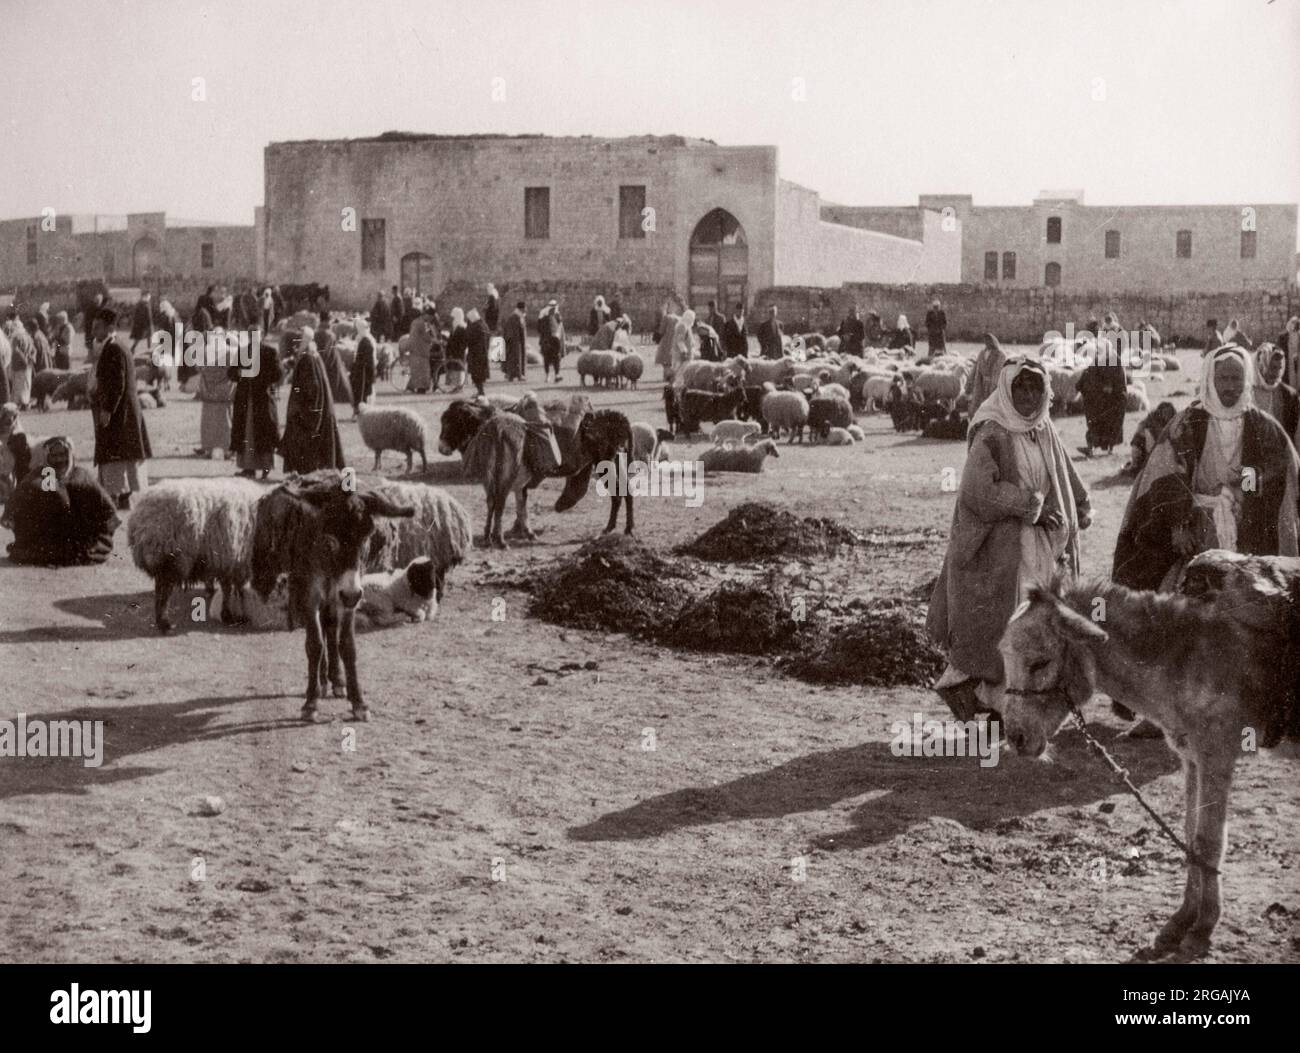 1943 Moyen-Orient Syrie - scène à Alep - moutons sur le marché Photographie d'un officier de recrutement de l'armée britannique stationné en Afrique de l'est et au Moyen-Orient pendant la Seconde Guerre mondiale Banque D'Images